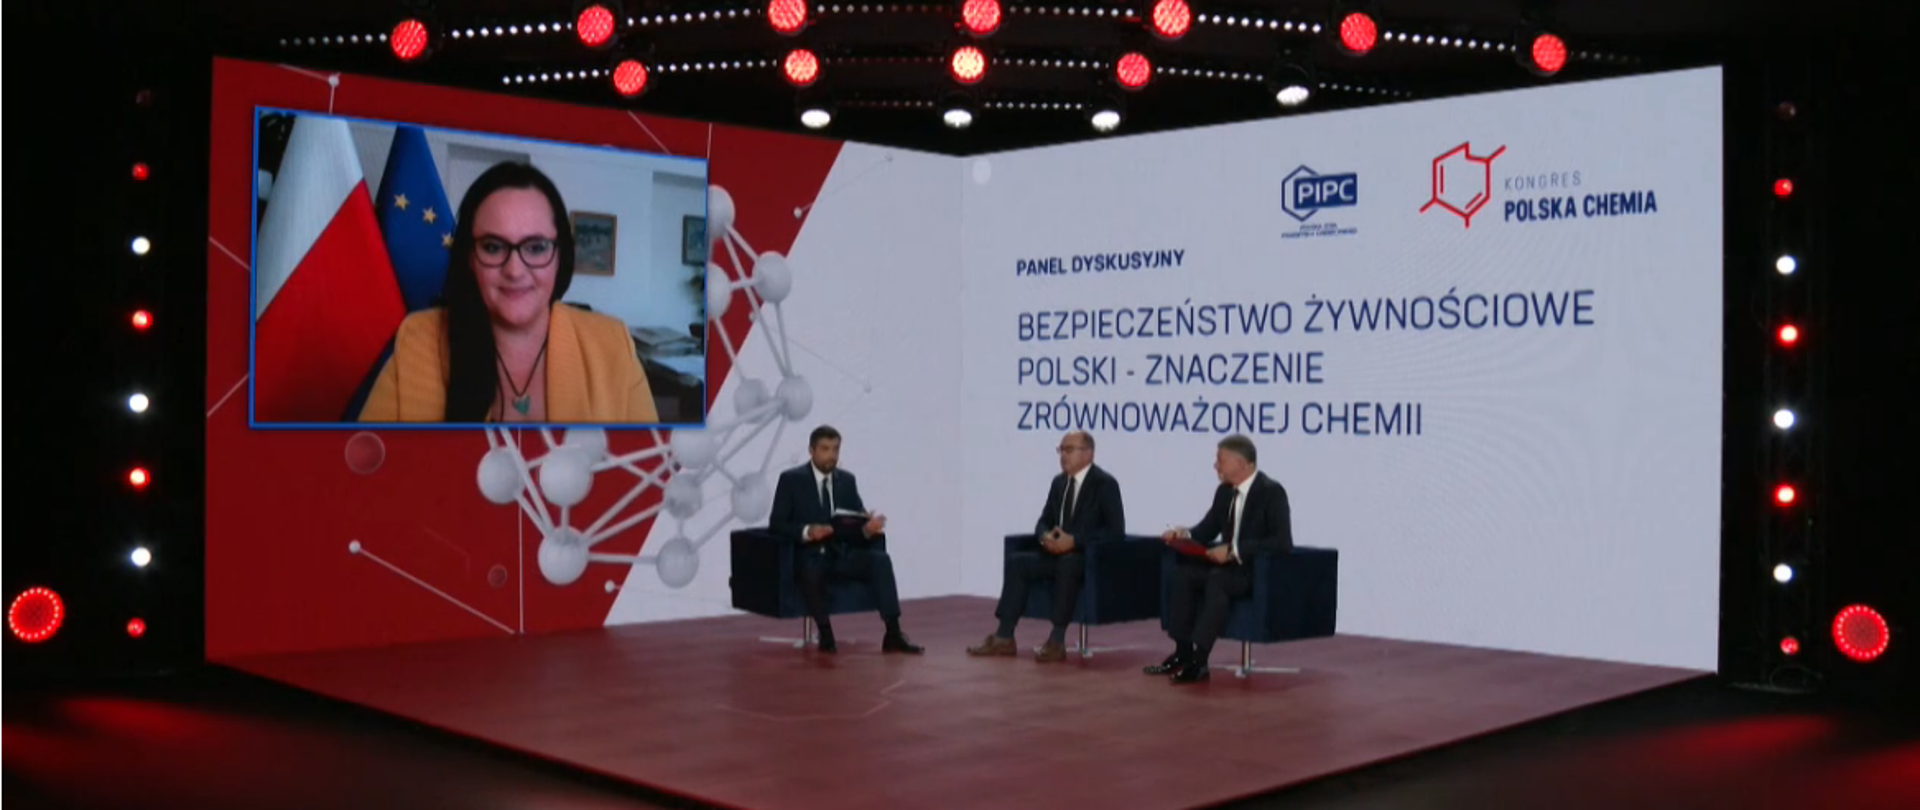 Na scenie w fotelach siedzi trzech mężczyzn. Na ekranie wiszącym na ścianie widać minister Jarosińską-Jedynak.